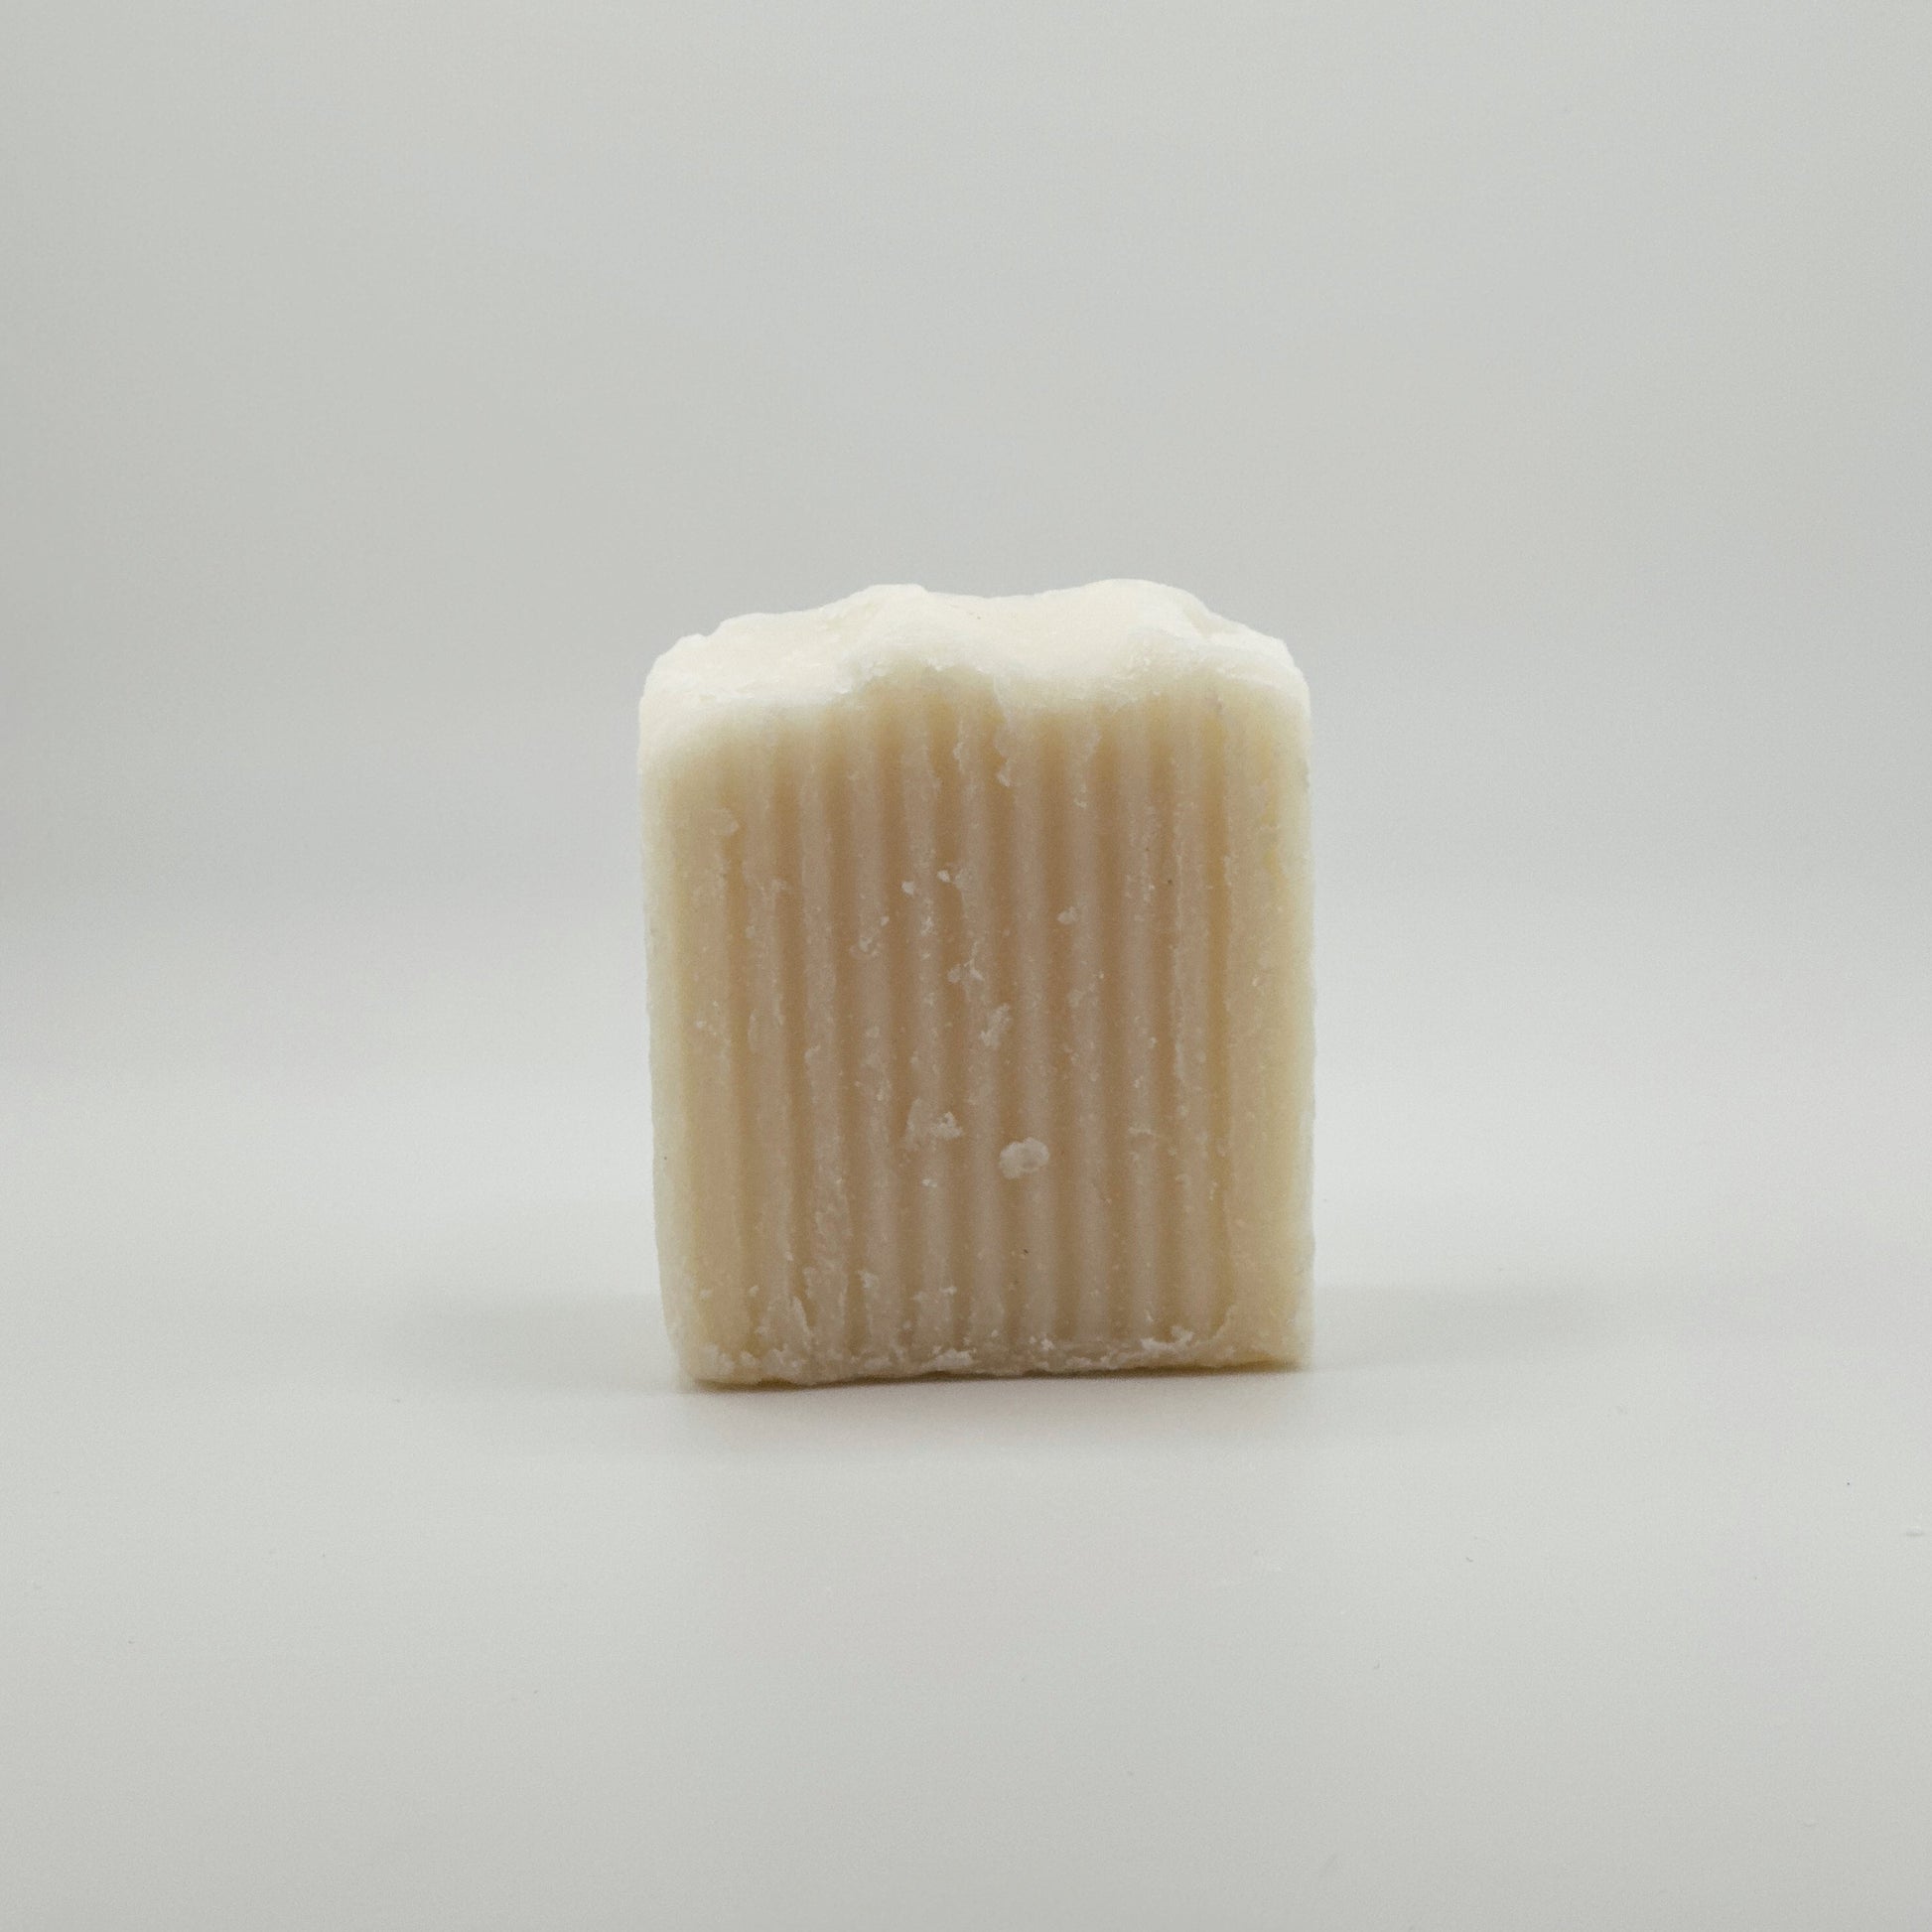 tallow soap bar